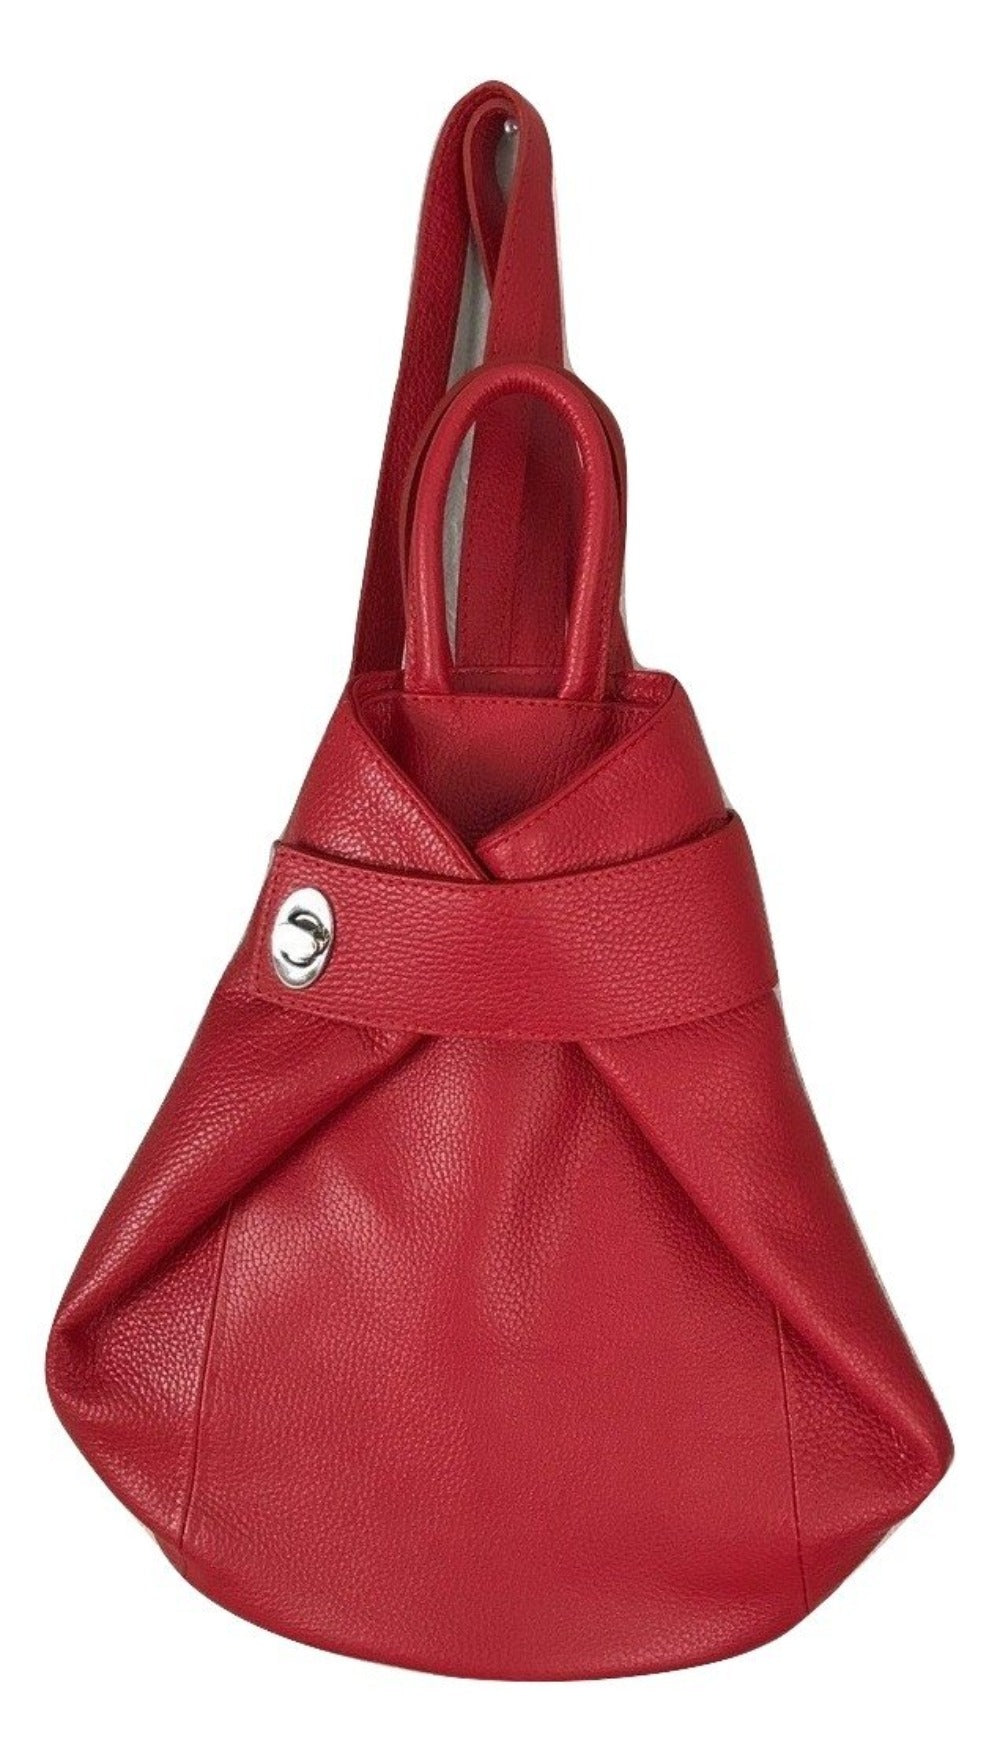 Wonderful spirit hobo bag that converts into a backpack – Anekke